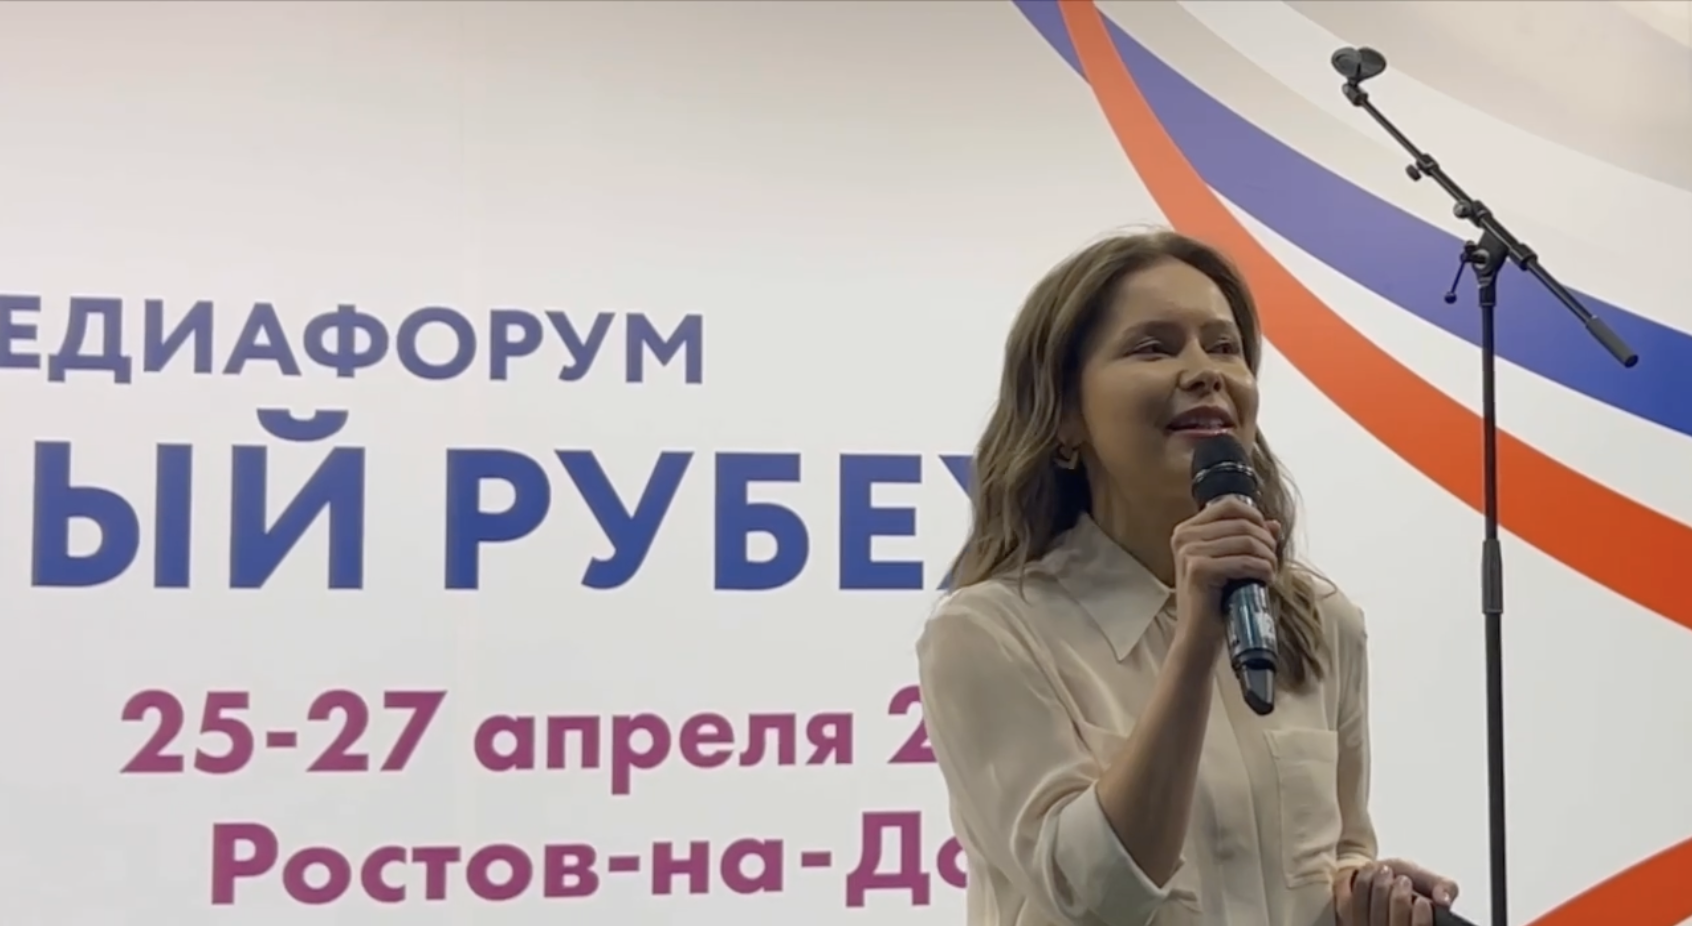 Студенческий медиацентр ДонГУ продолжает рассказывать о медиафоруме "Южный рубеж"